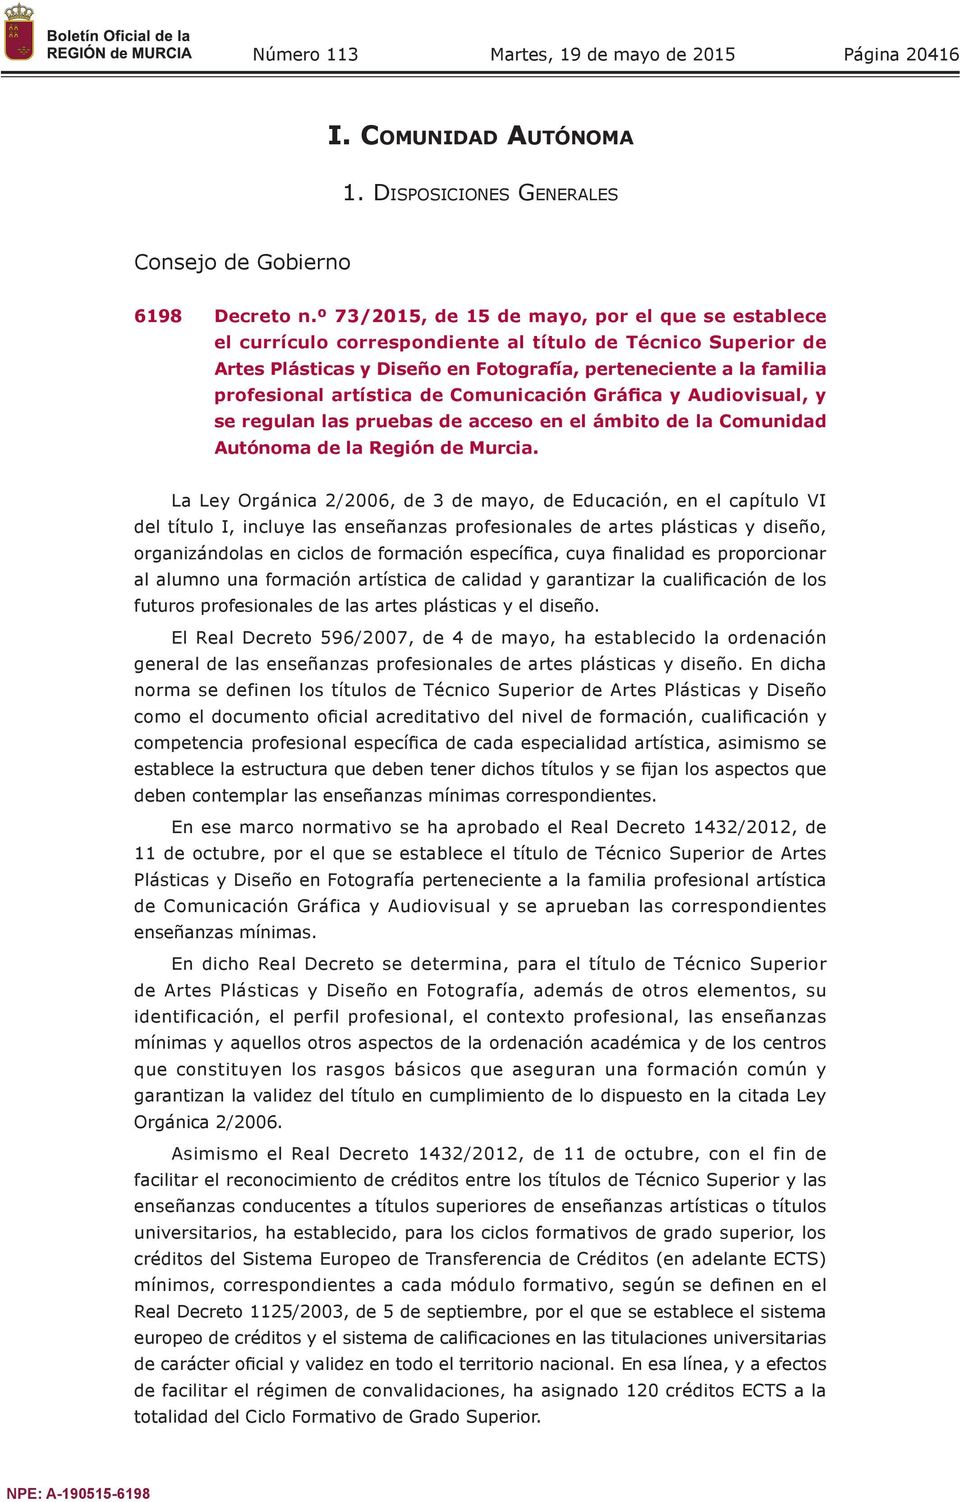 artística de Comunicación Gráfica y Audiovisual, y se regulan las pruebas de acceso en el ámbito de la Comunidad Autónoma de la Región de Murcia.